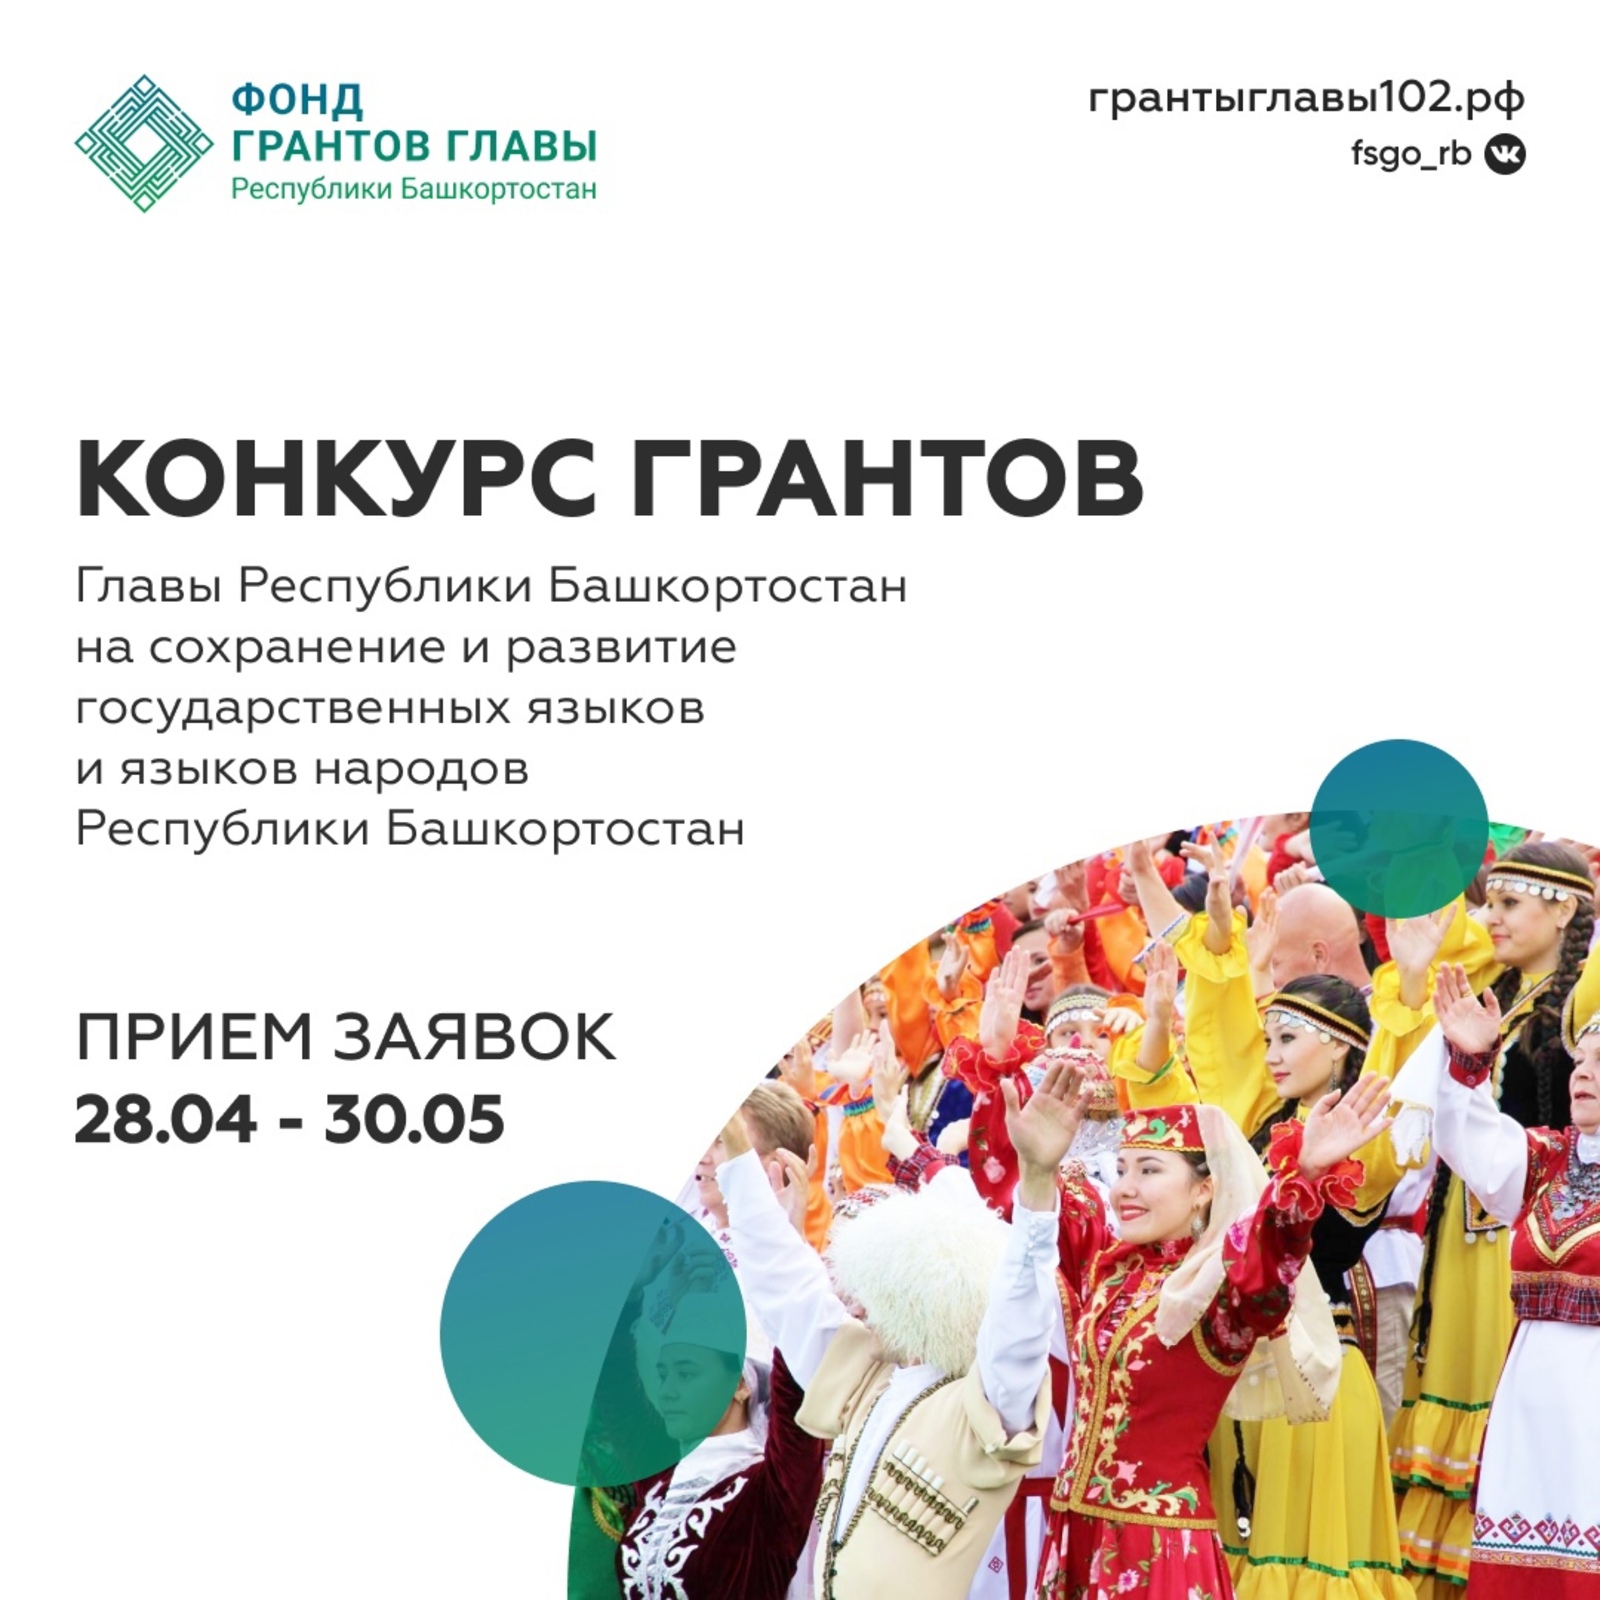 Сегодня Фонд грантов Главы Республики Башкортостан открыл прием заявок на второй конкурс грантов 2022 г.